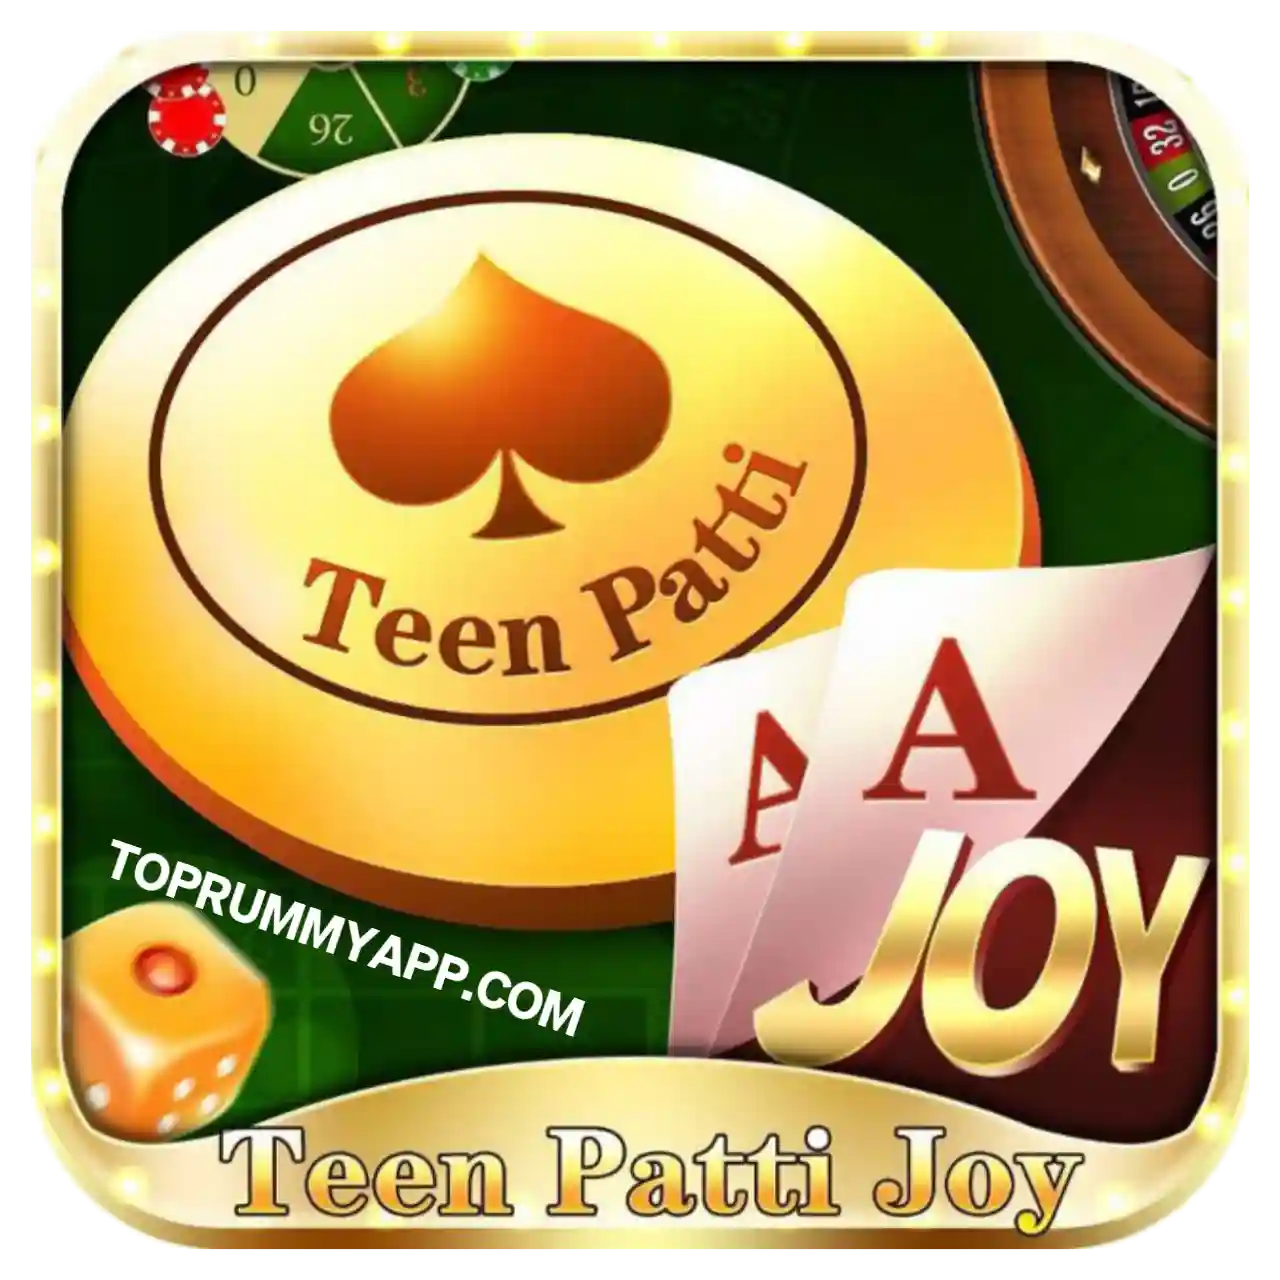 Teen Patti Joy Download - Teen Patti Pop Apk Download